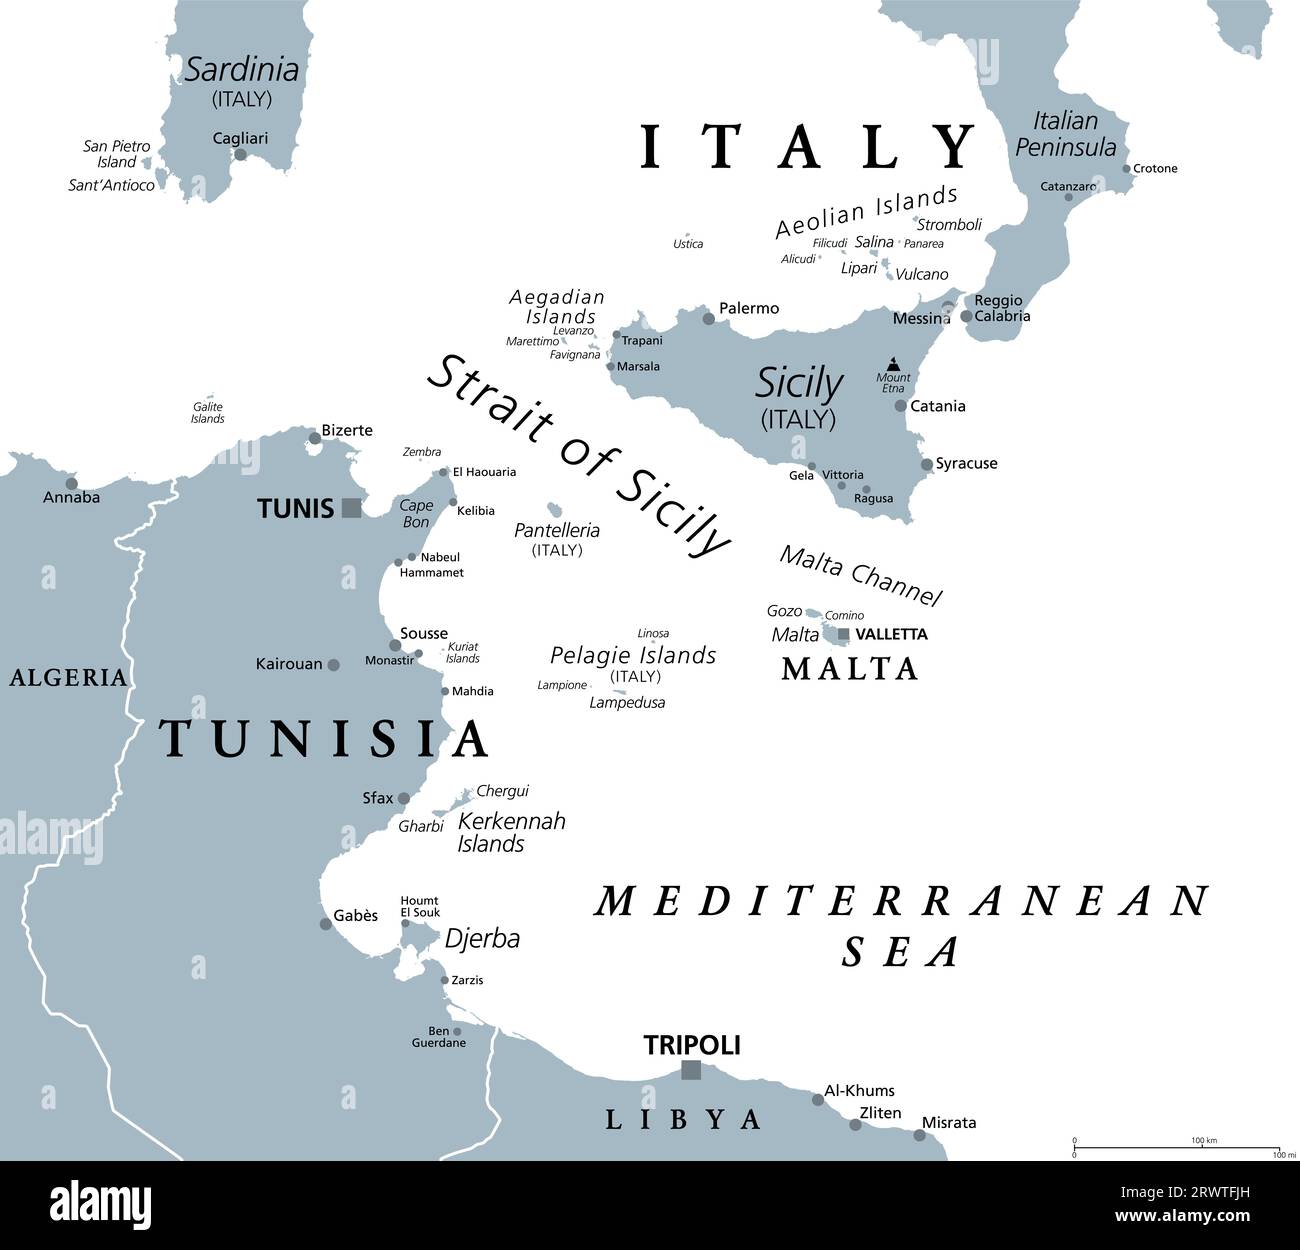 Détroit de Sicile, carte politique grise. Aussi appelé canal sicilien. Détroit, situé dans la mer Méditerranée, entre la Tunisie et la Sicile, Italie. Banque D'Images